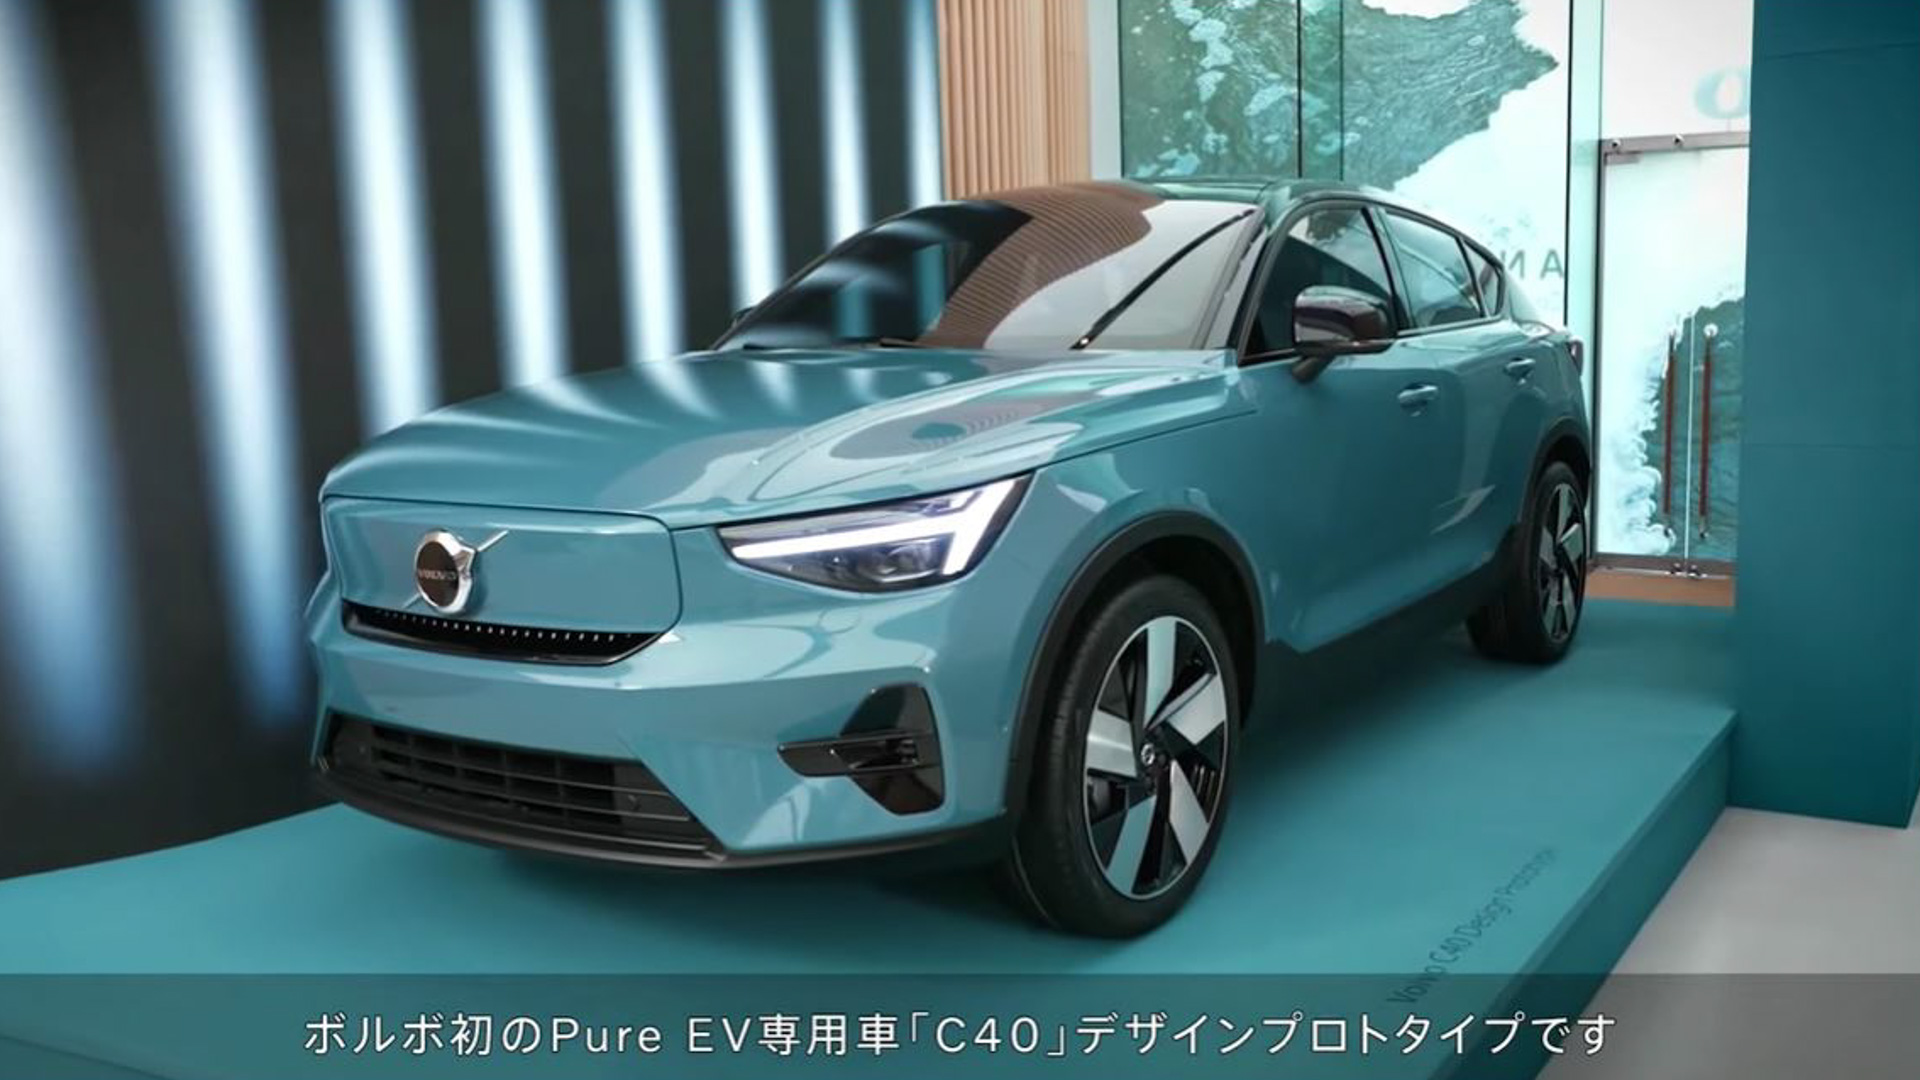 ボルボ 新型ev C40 日本初公開 30年にボルボはev専用ブランドになると宣言 Car Watch